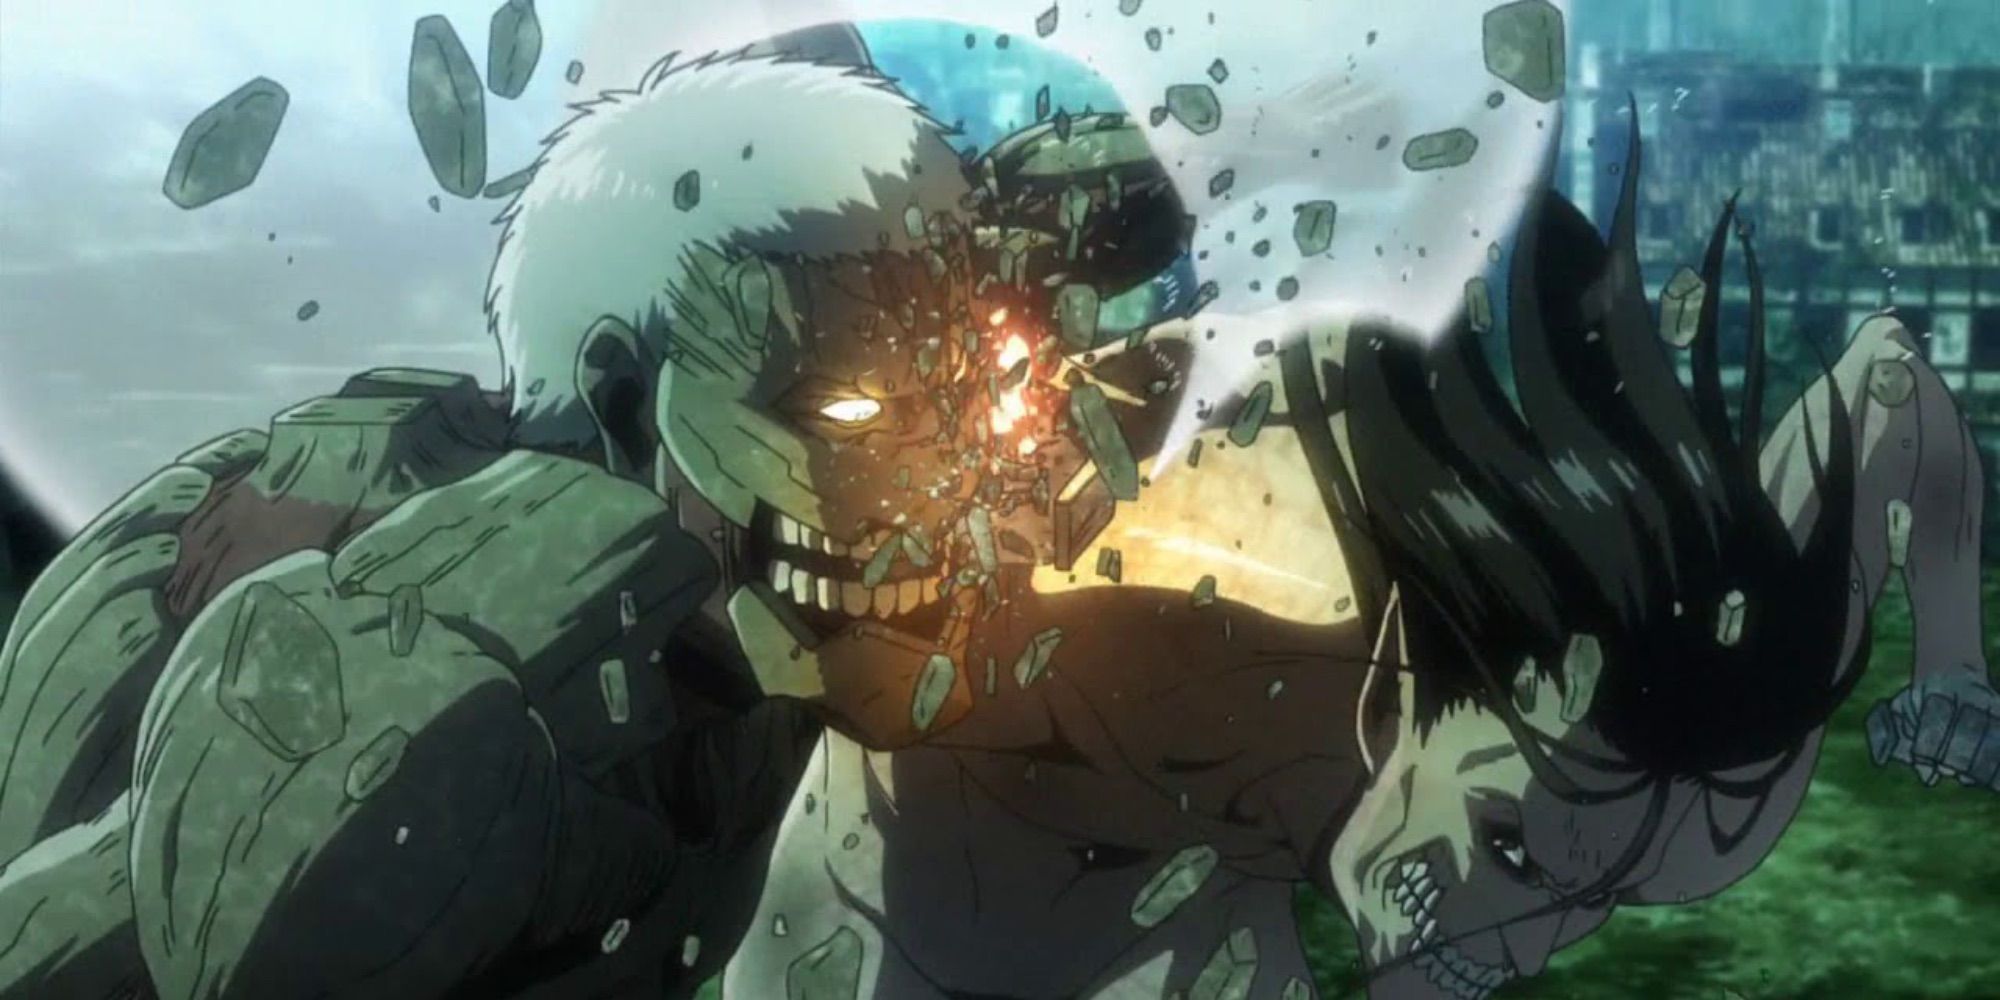 Attack on Titan Season 3 Part 2 intro Eren vs. Reiner